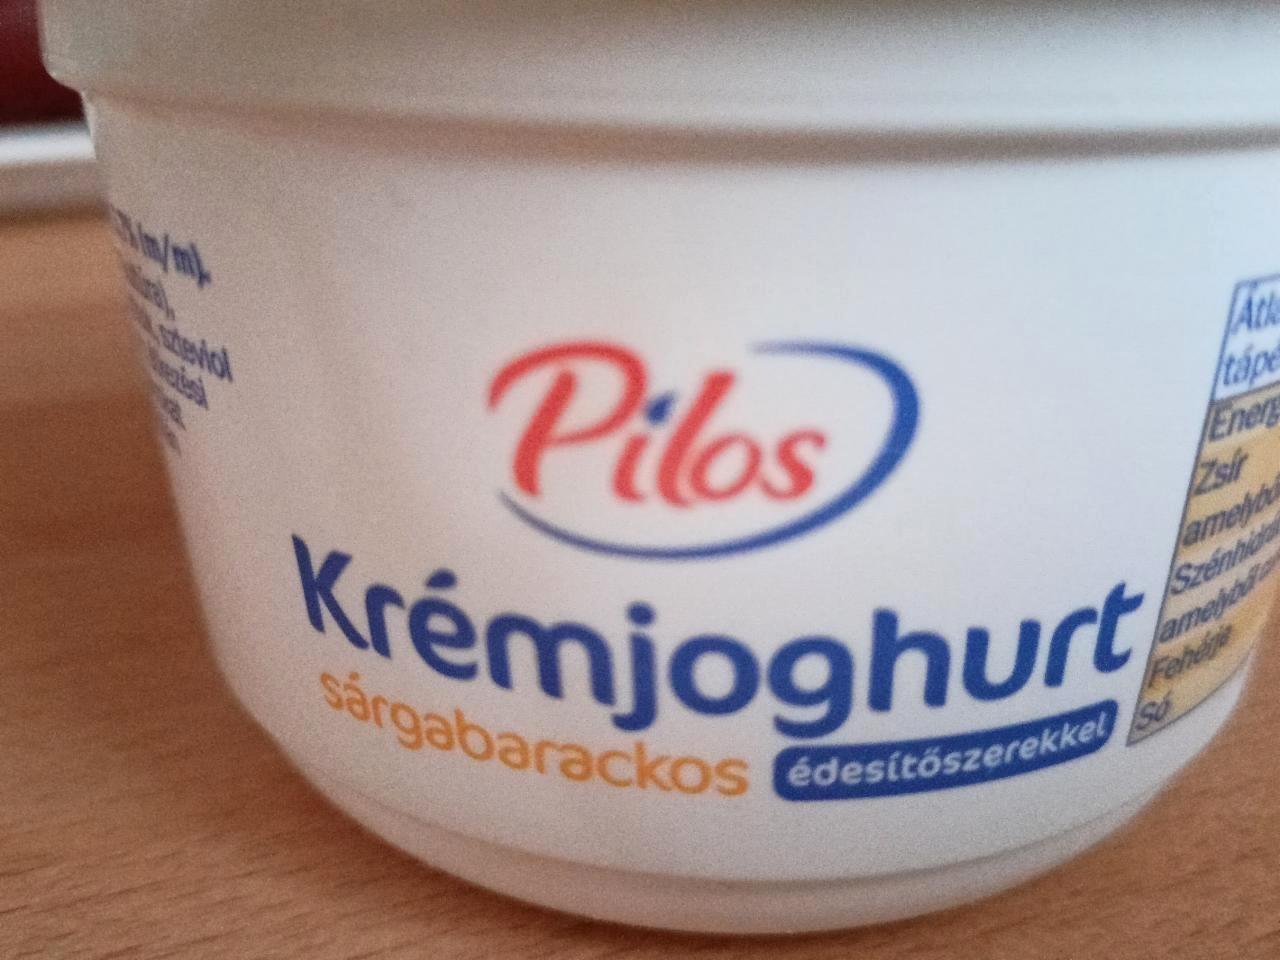 Képek - Krémjoghurt sárgabarackos édesítőszerrel Pilos